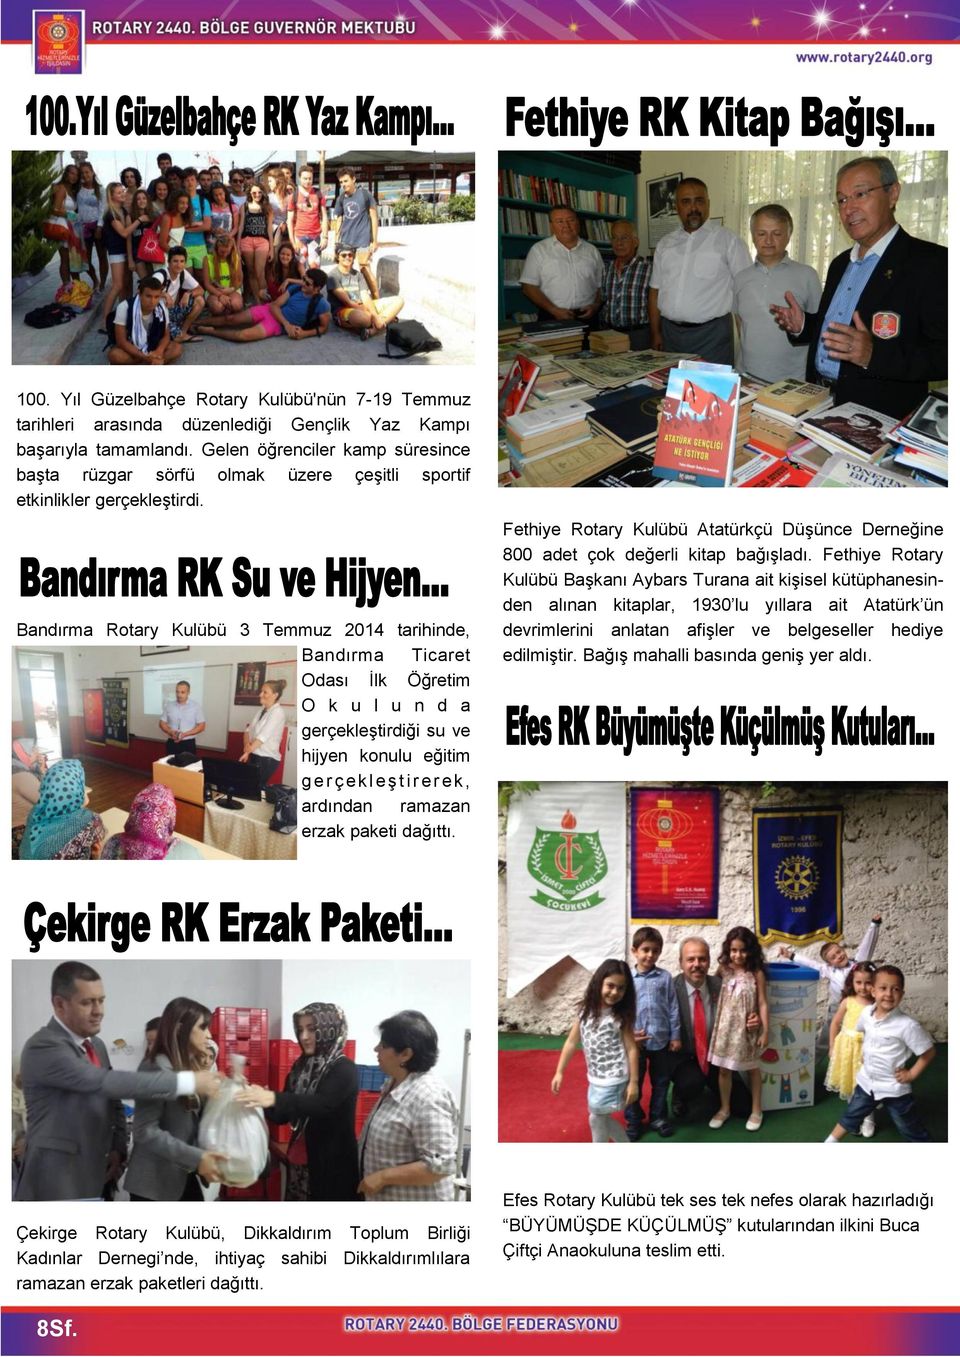 Bandırma Rotary Kulübü 3 Temmuz 2014 tarihinde, Bandırma Ticaret Odası İlk Öğretim O k u l u n d a gerçekleştirdiği su ve hijyen konulu eğitim g e r ç e k l e ş t i r e r e k, ardından ramazan erzak